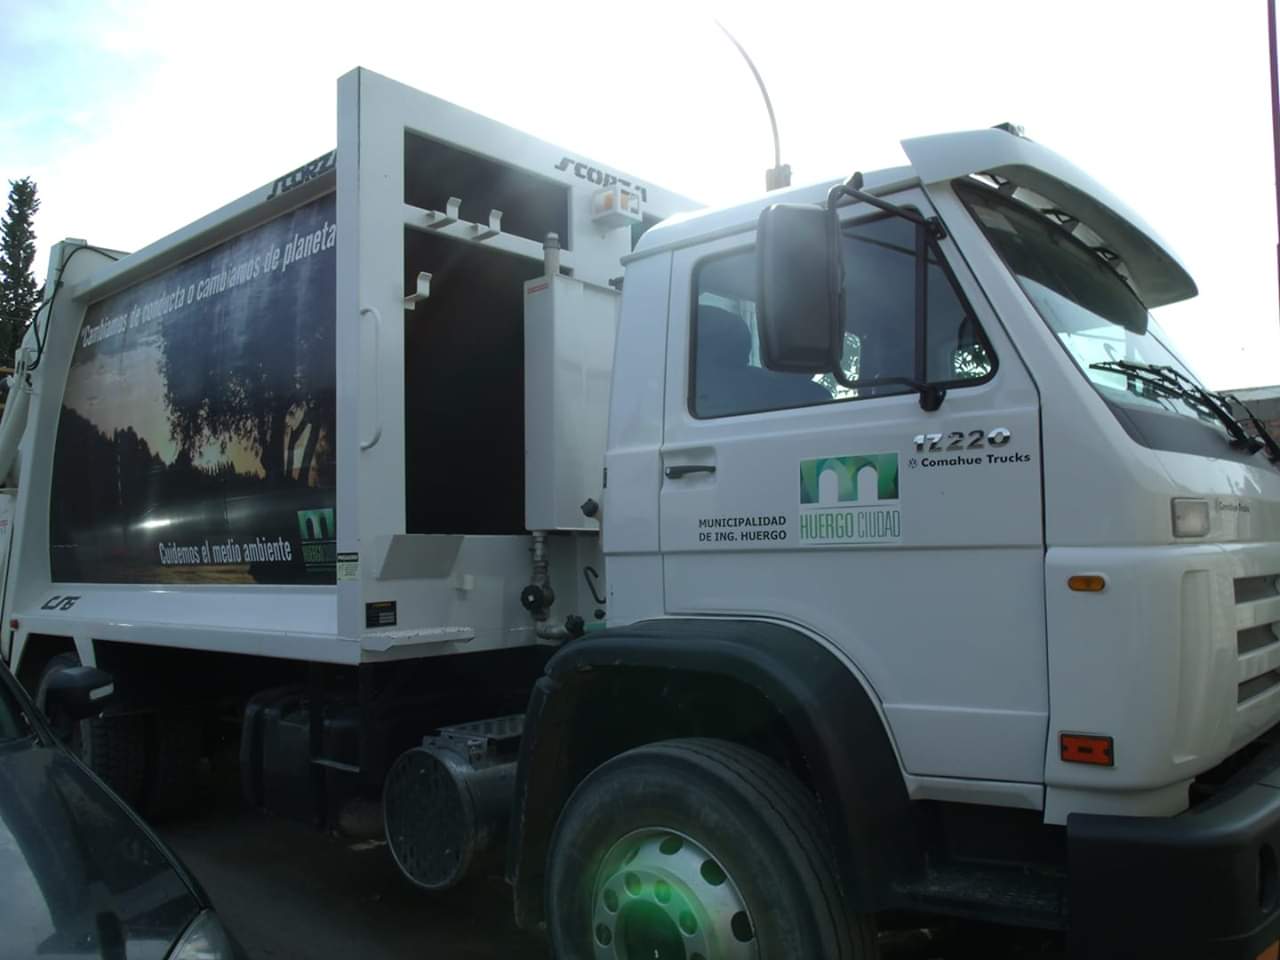 En Huergo, Godoy y Regina habrá servicio de recolección de residuos hoy y mañana.